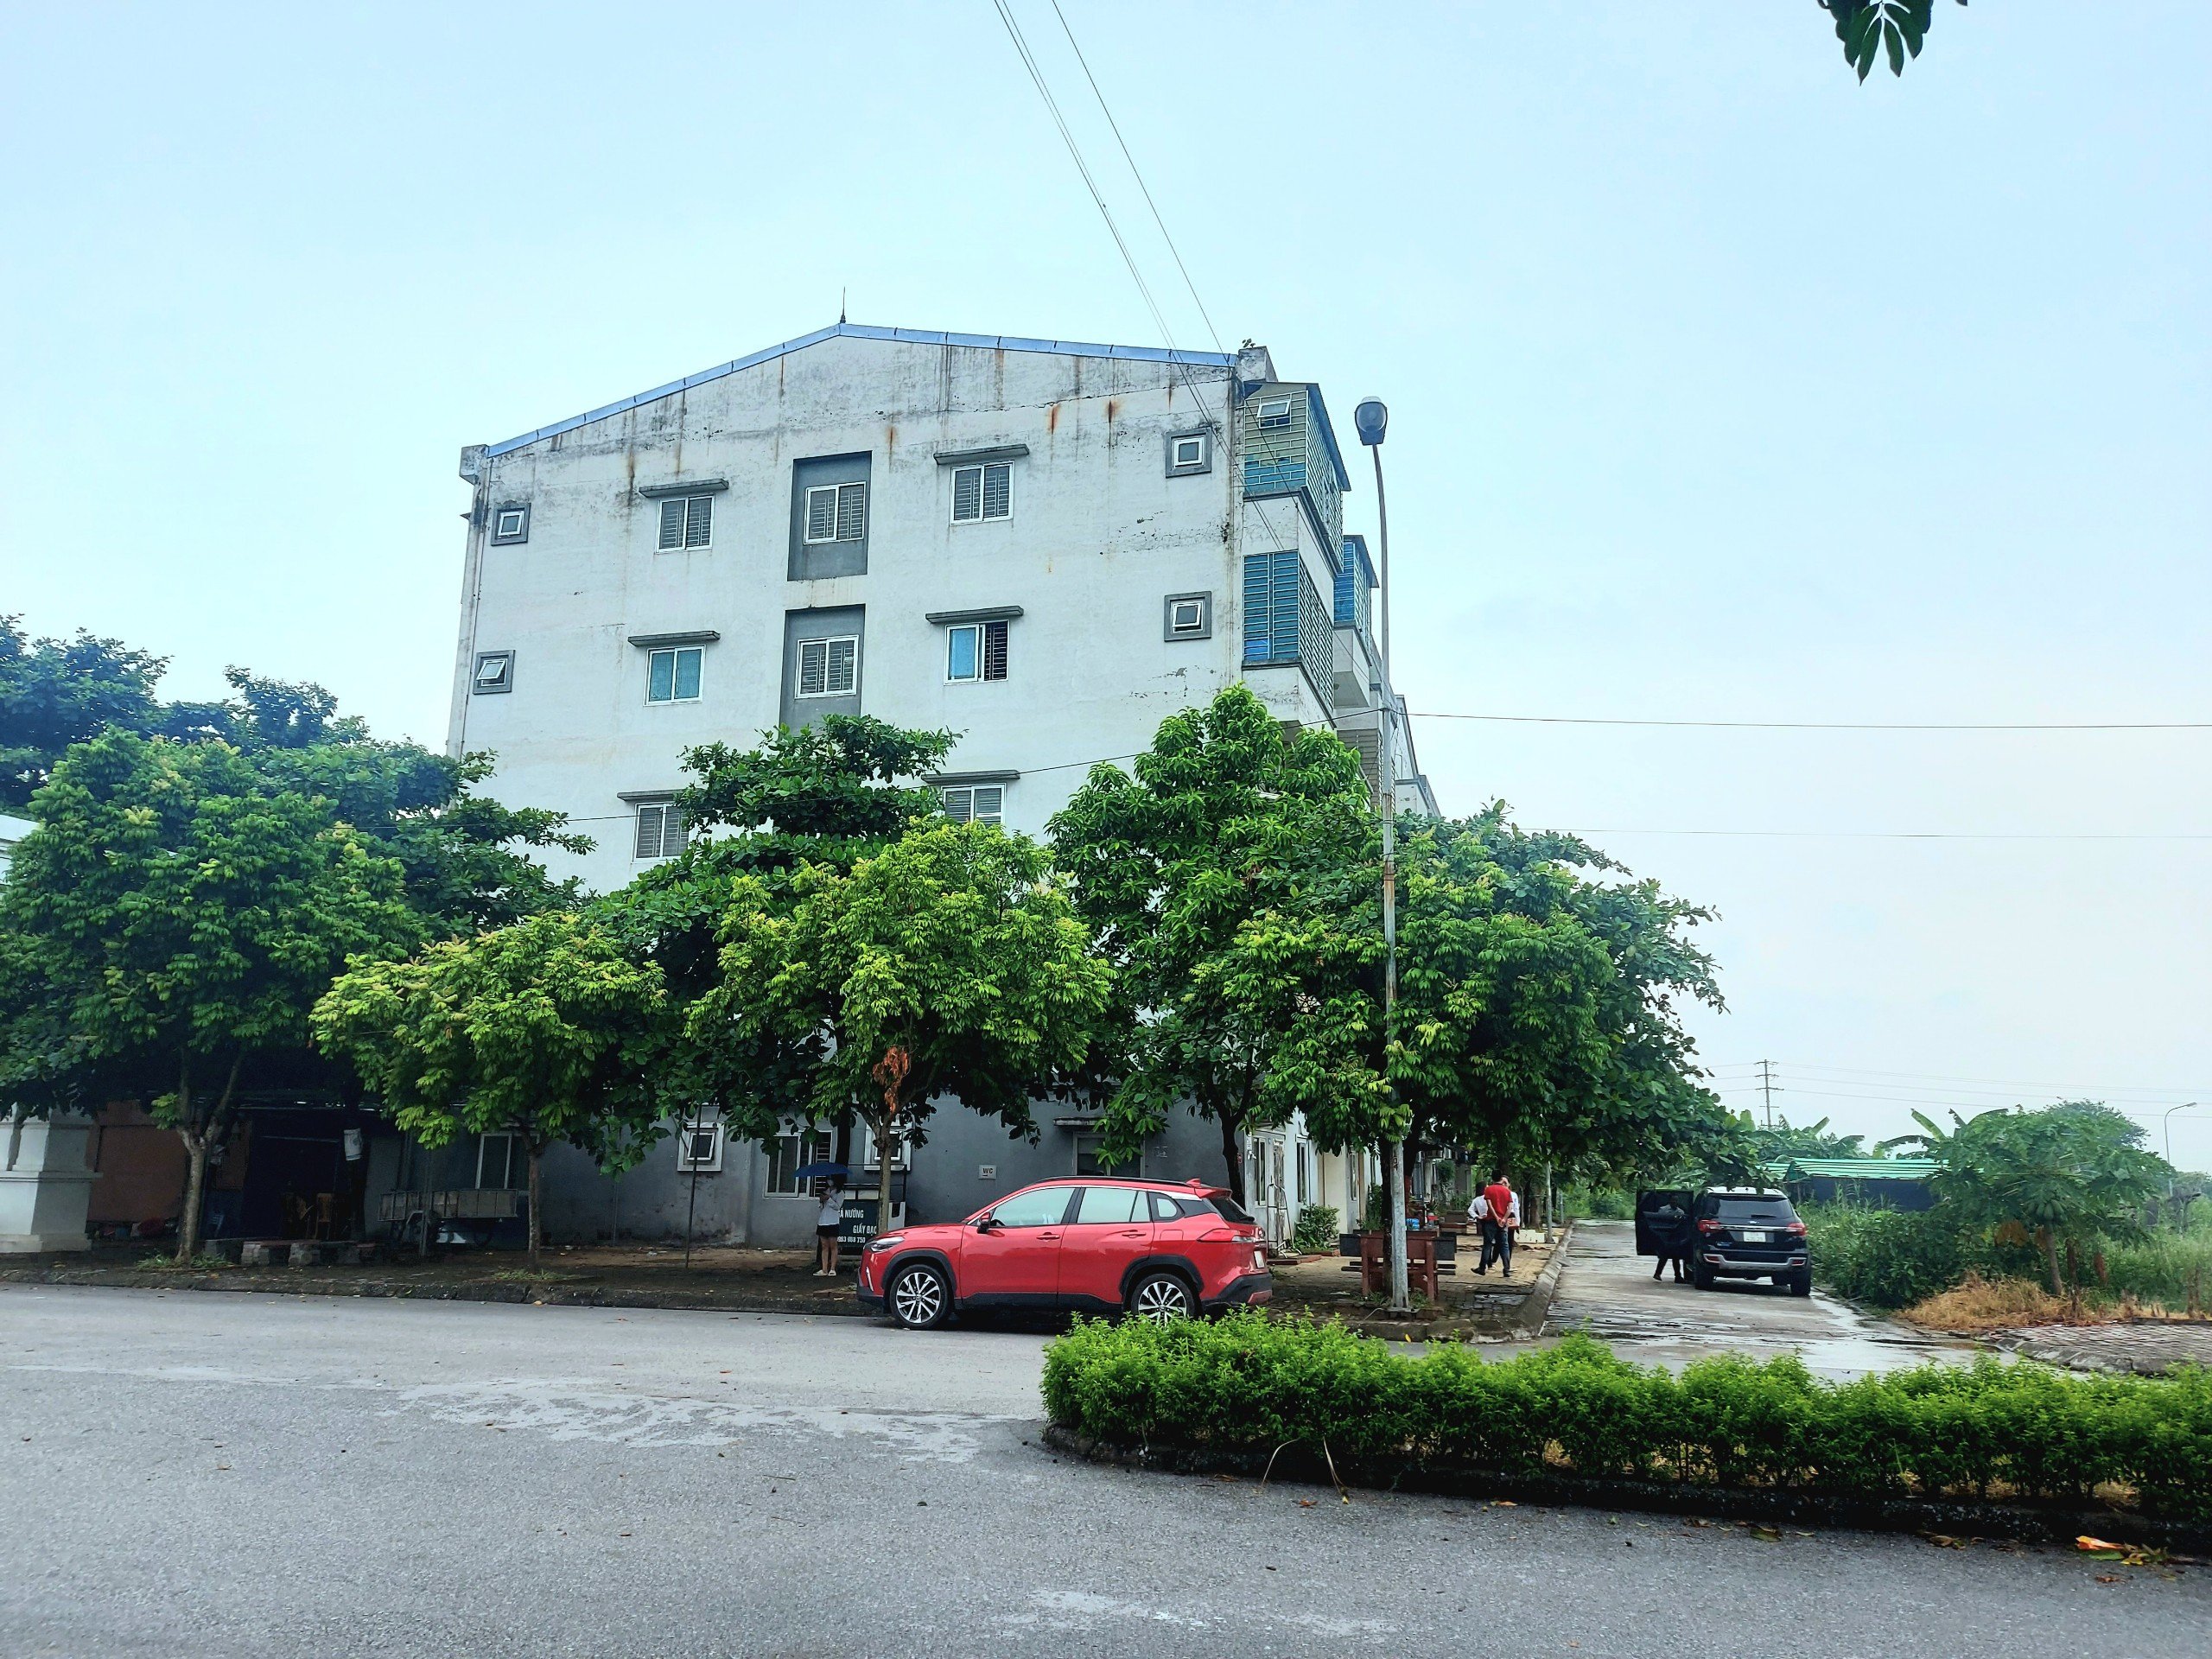 Bán nhà ở xã hội Hải Dương chỉ từ 300tr/căn, sổ hồng lâu dài 5